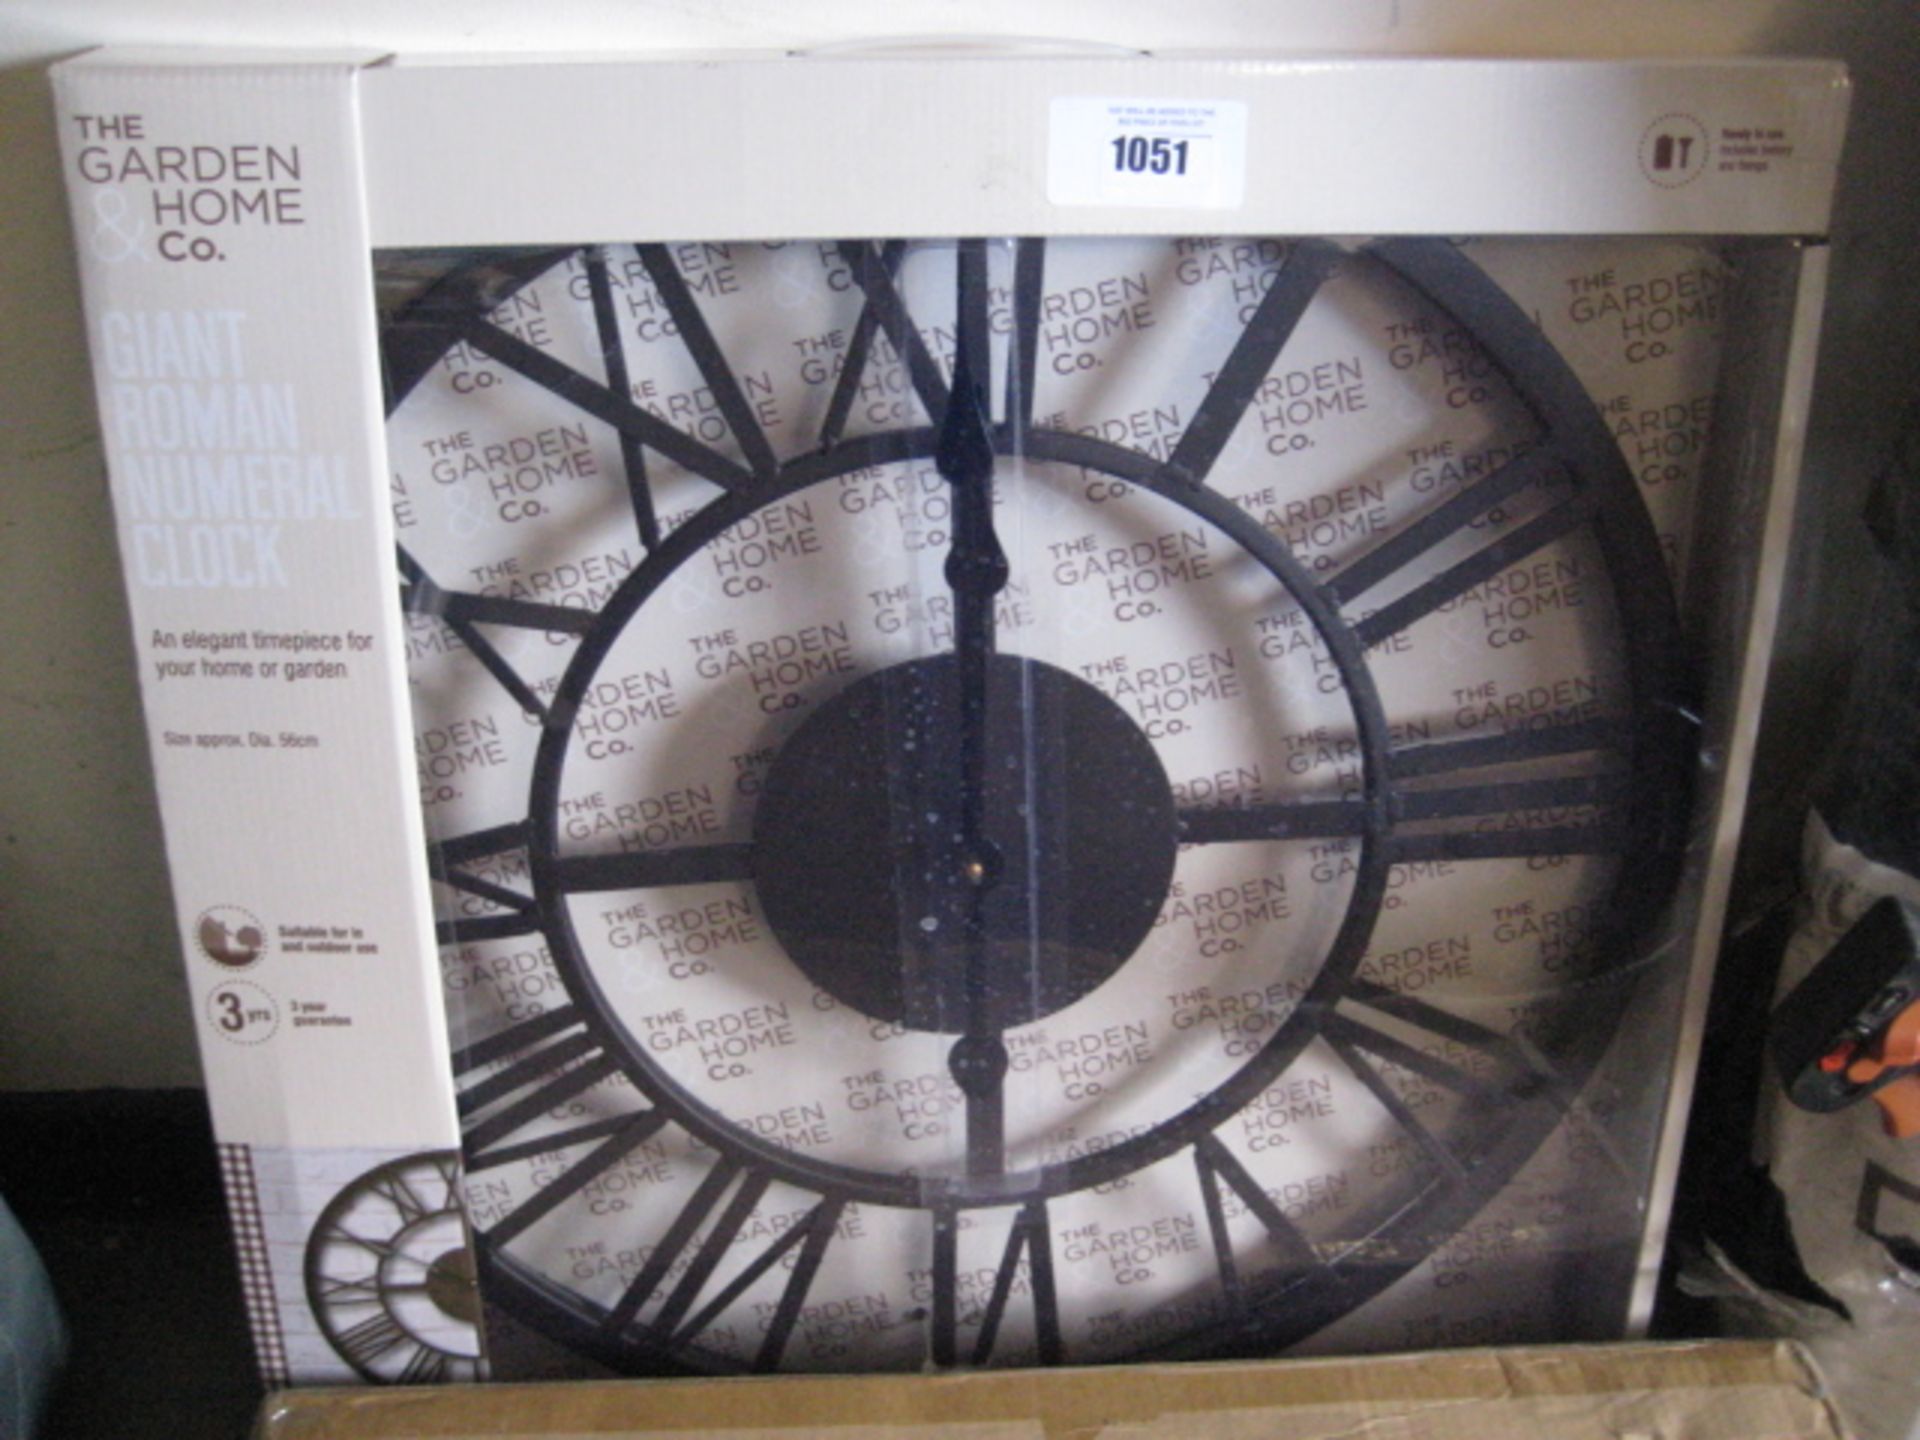 Giant Roman numeral garden clock